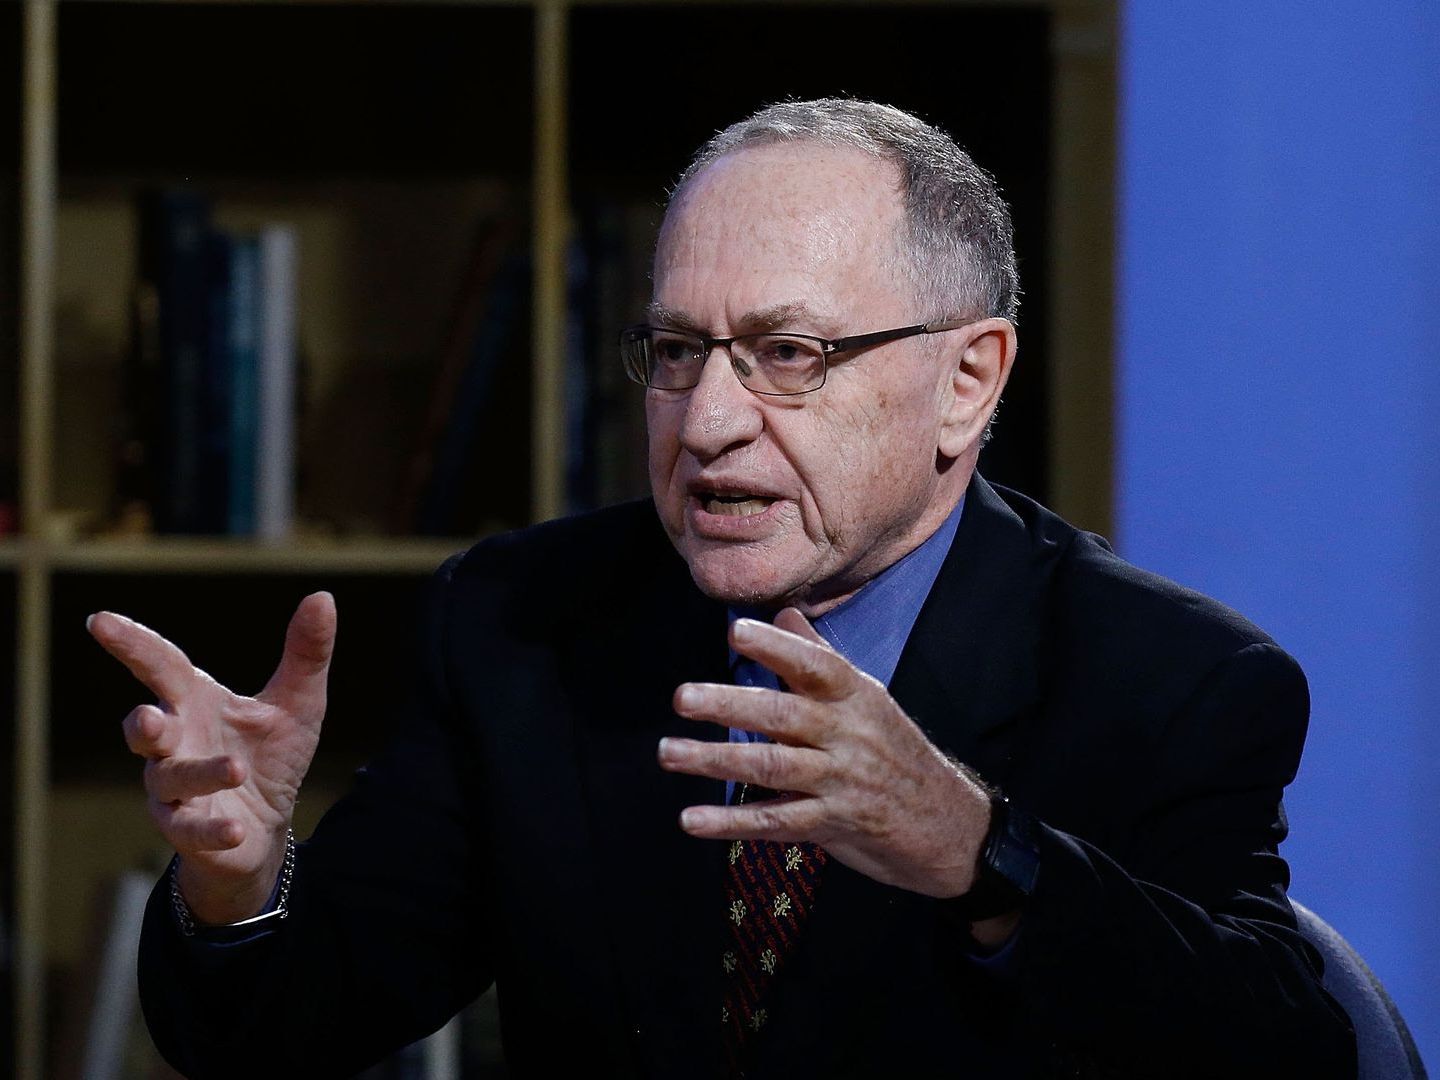 Alan Dershowitz says he's still advising Jeffrey Epstein